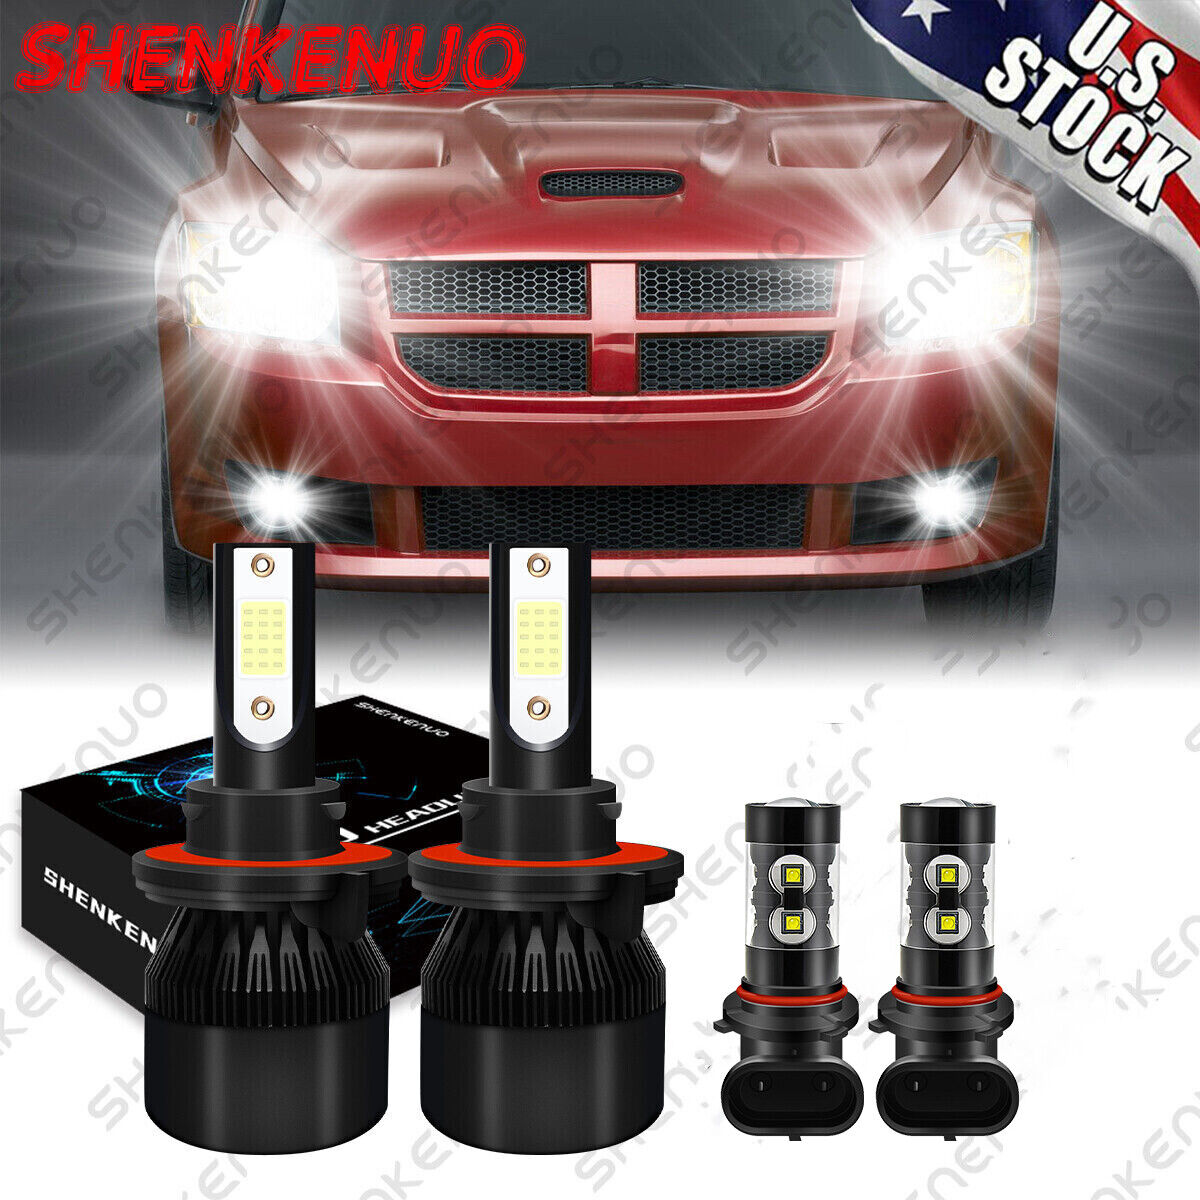 For Dodge Caliber 2007-2012 4x LED Headlight High/Low Beam+Fog Light Bulbs kit